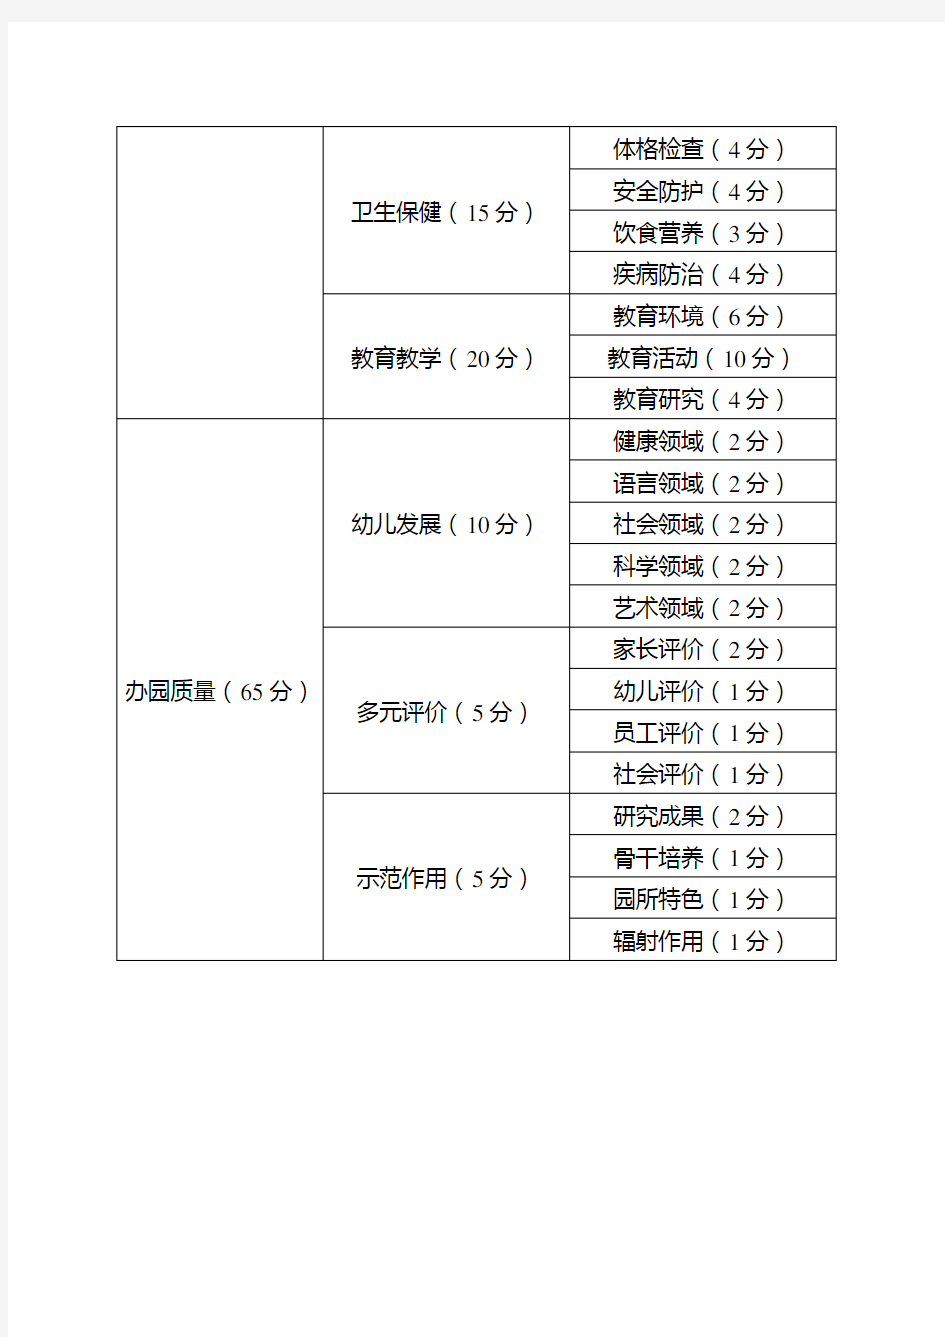 武汉市幼儿园等级评定指标体系